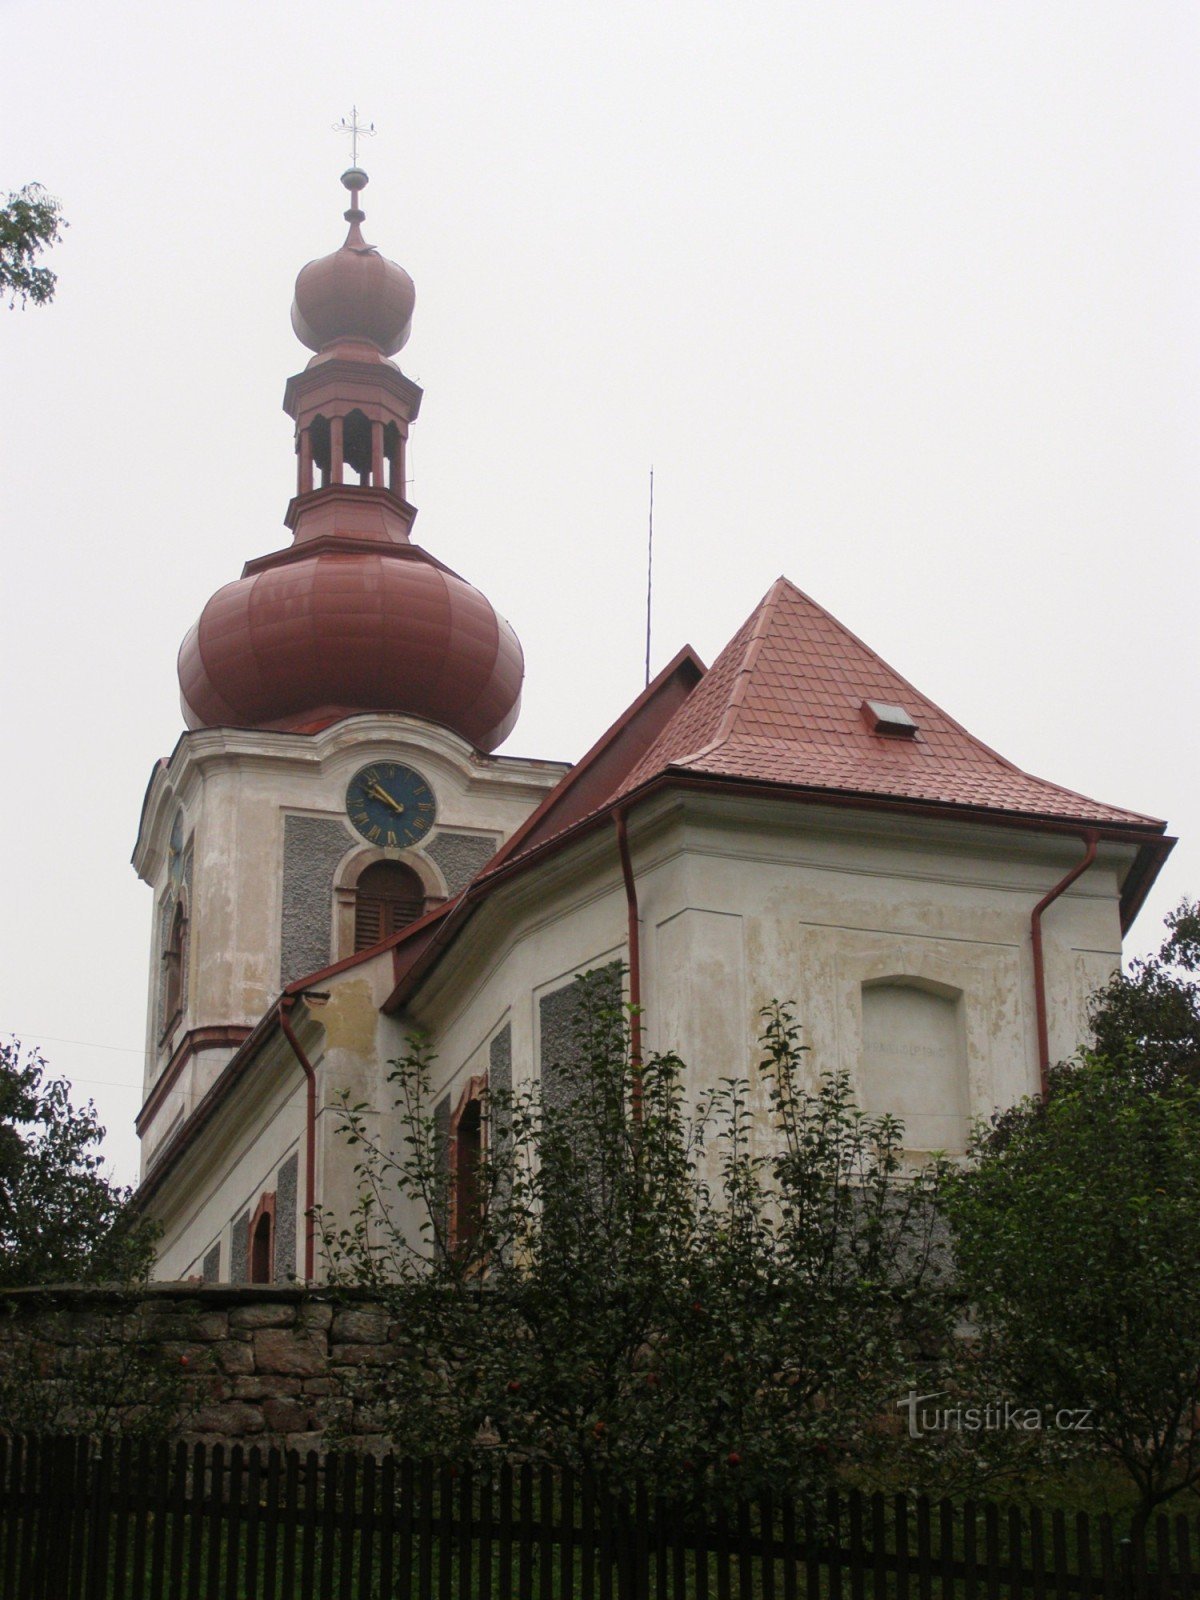 Nová Ves nad Popelkou - biserica Sf. Procopius